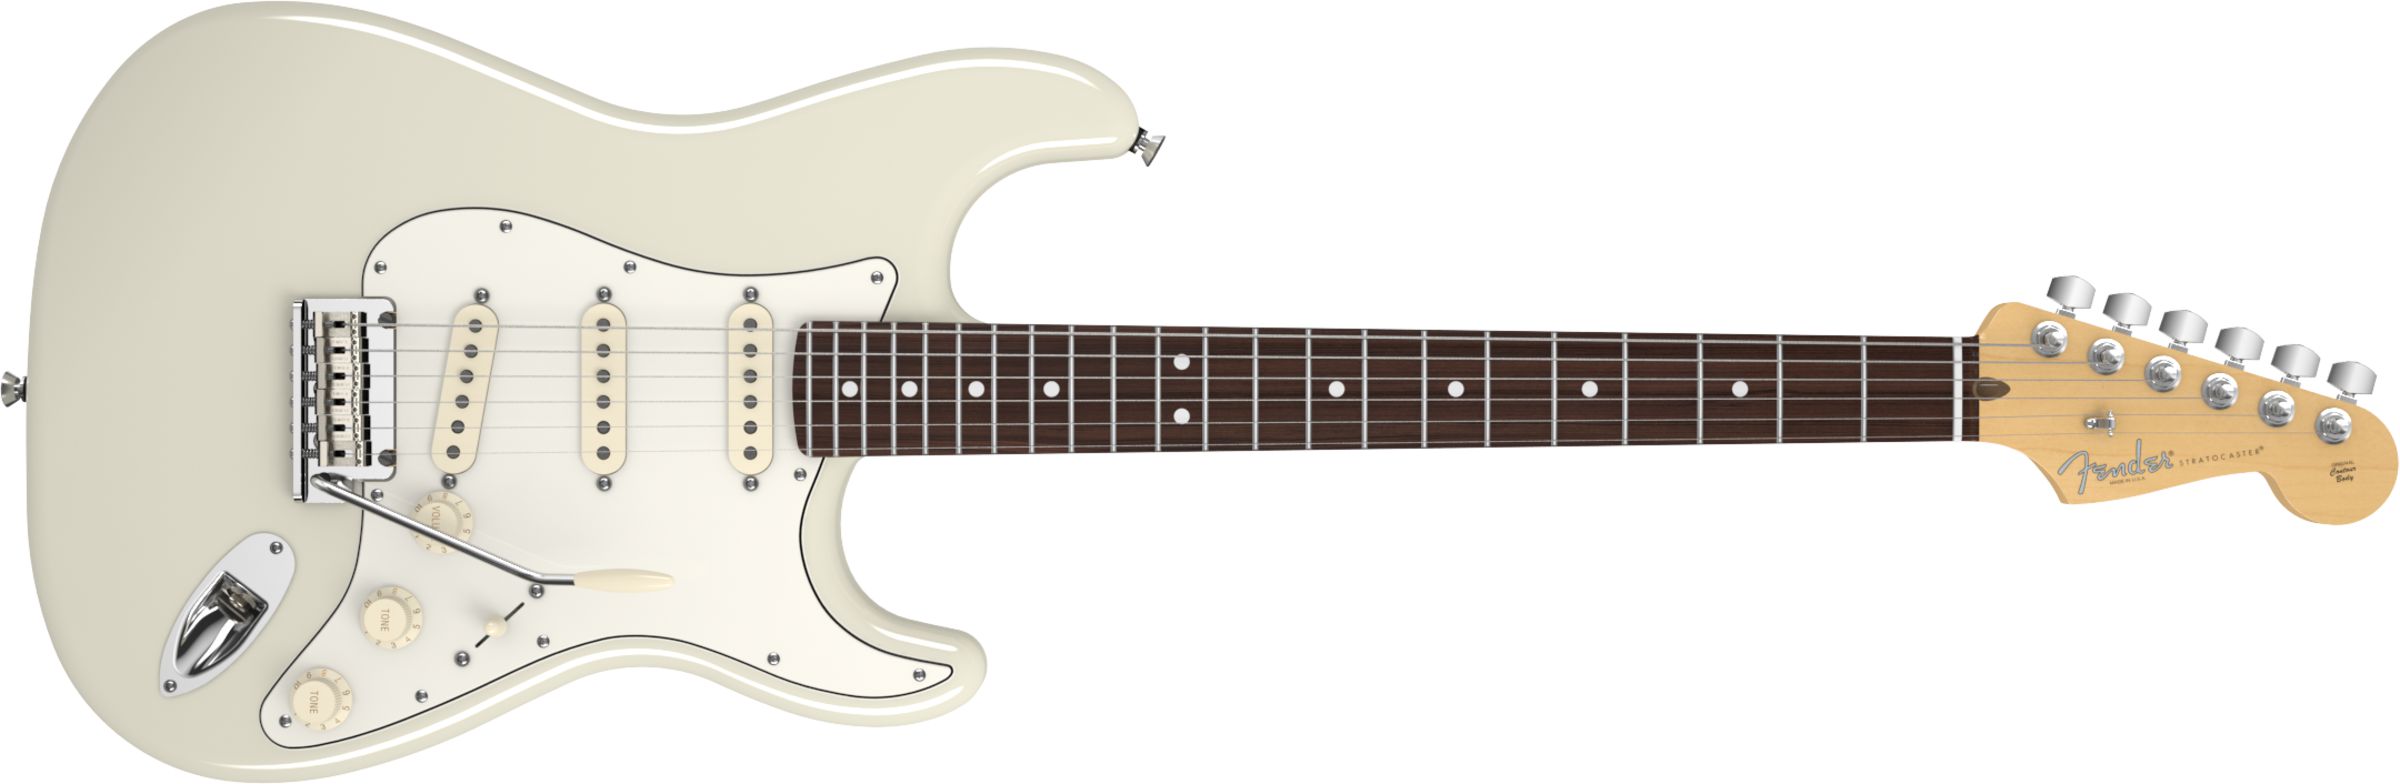 Fender Statocaster